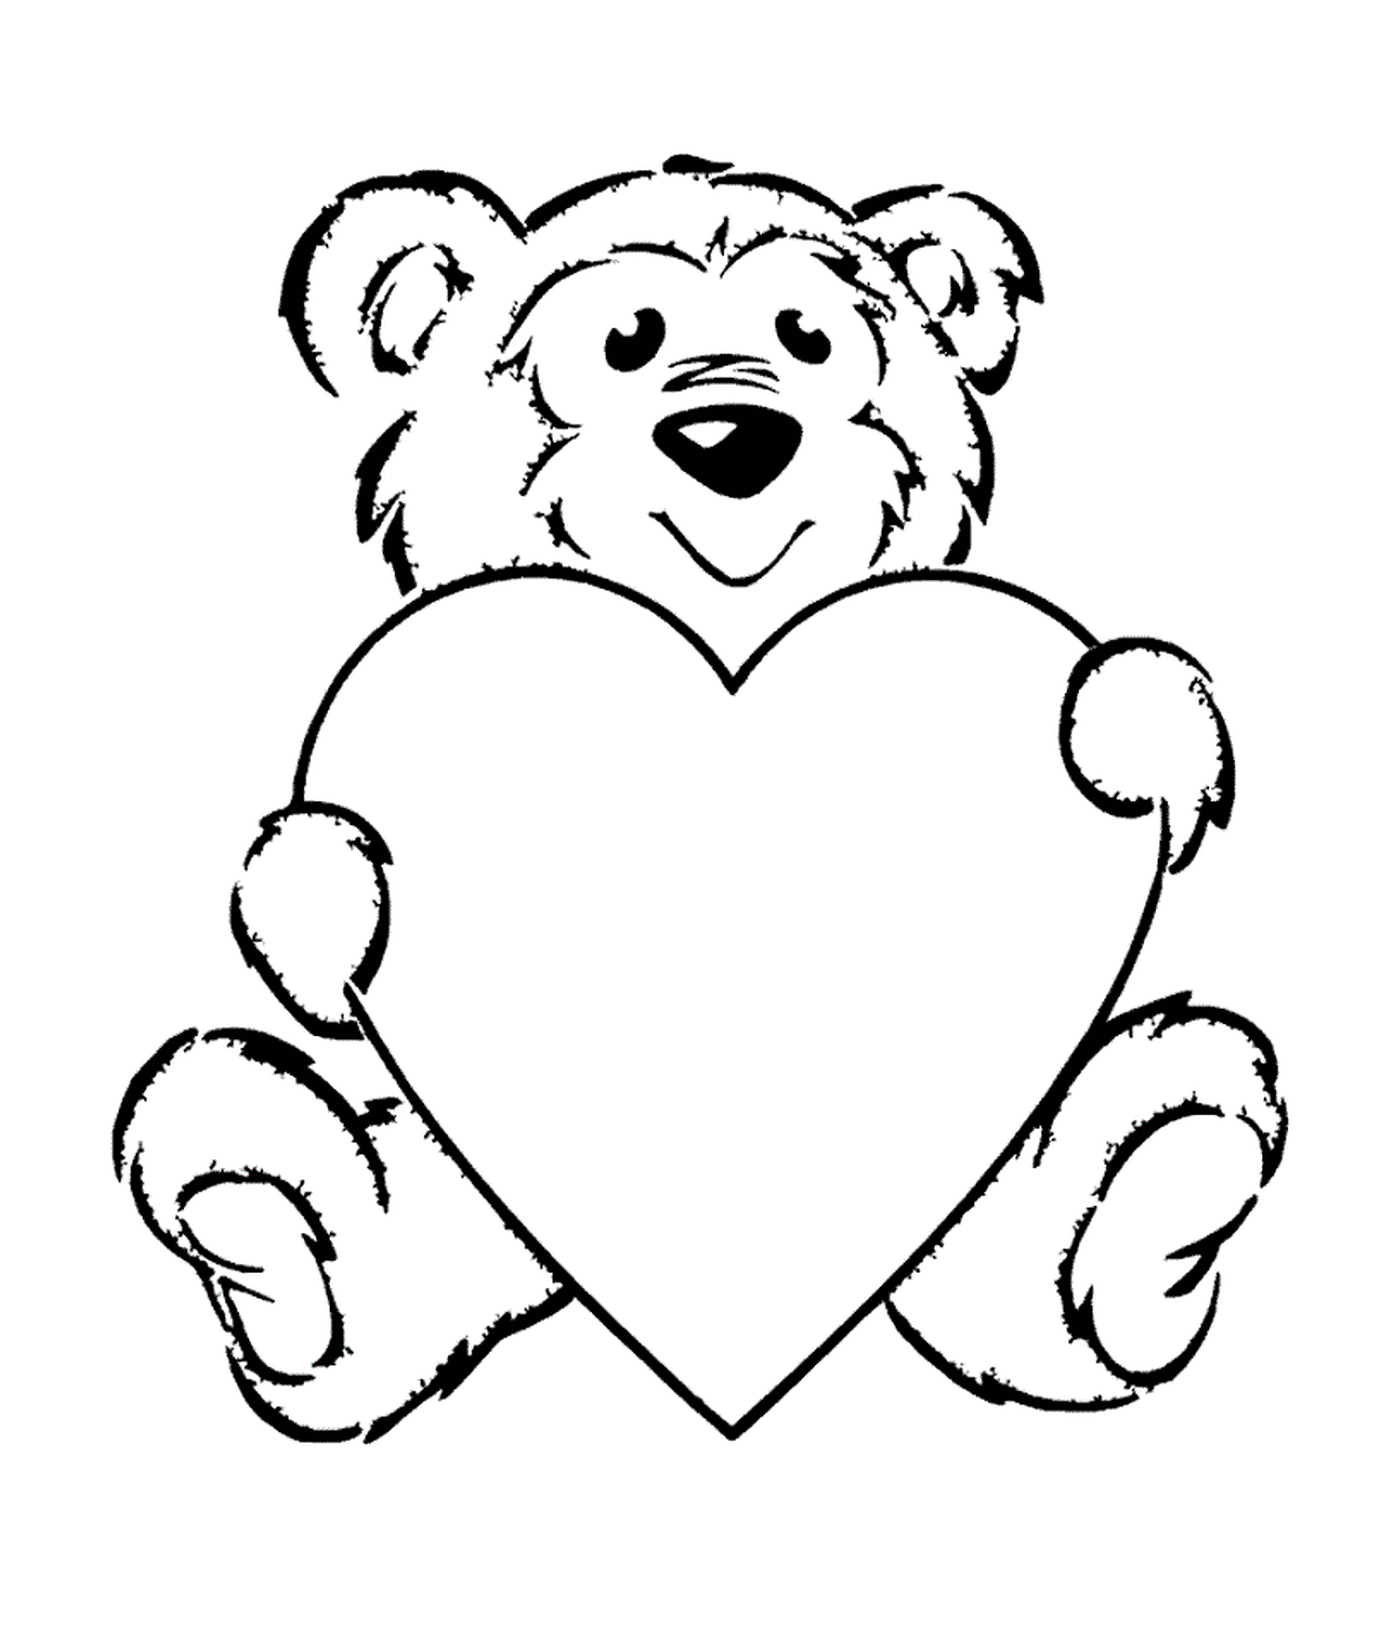  A teddy bear holding a heart 